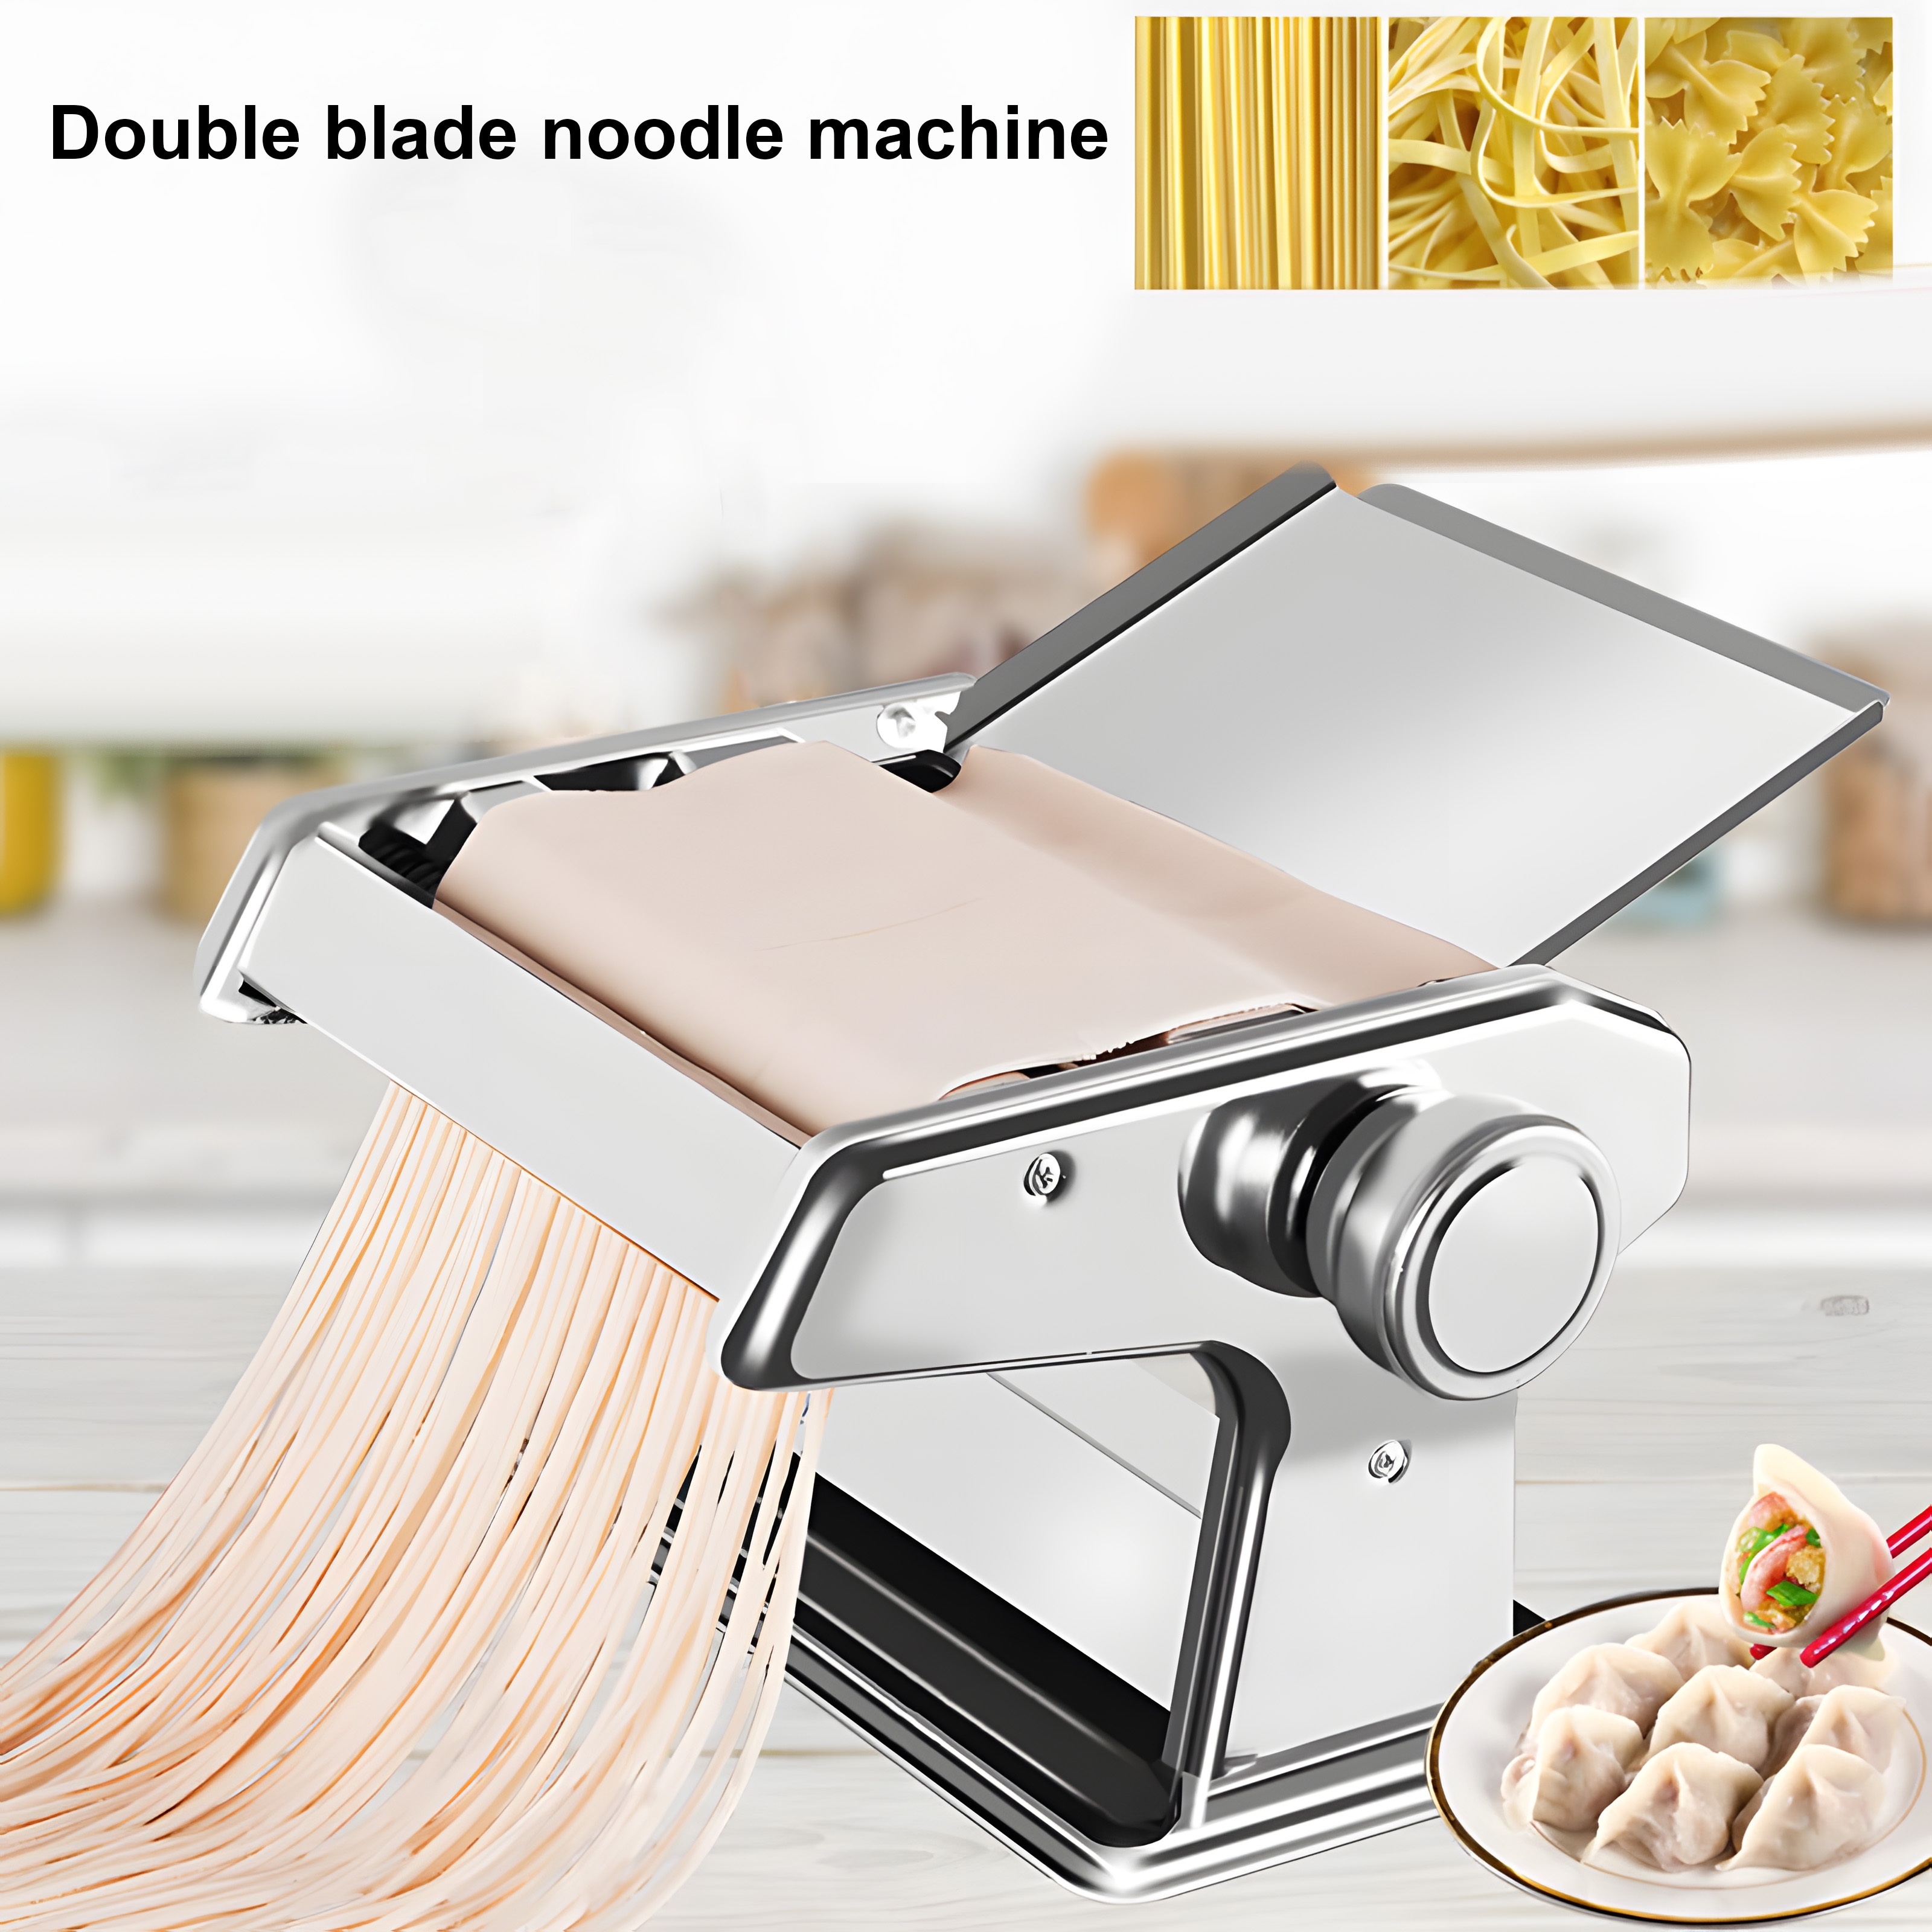 Stainless Steel Fresh Pasta Maker Roller Machine for Fettuccine